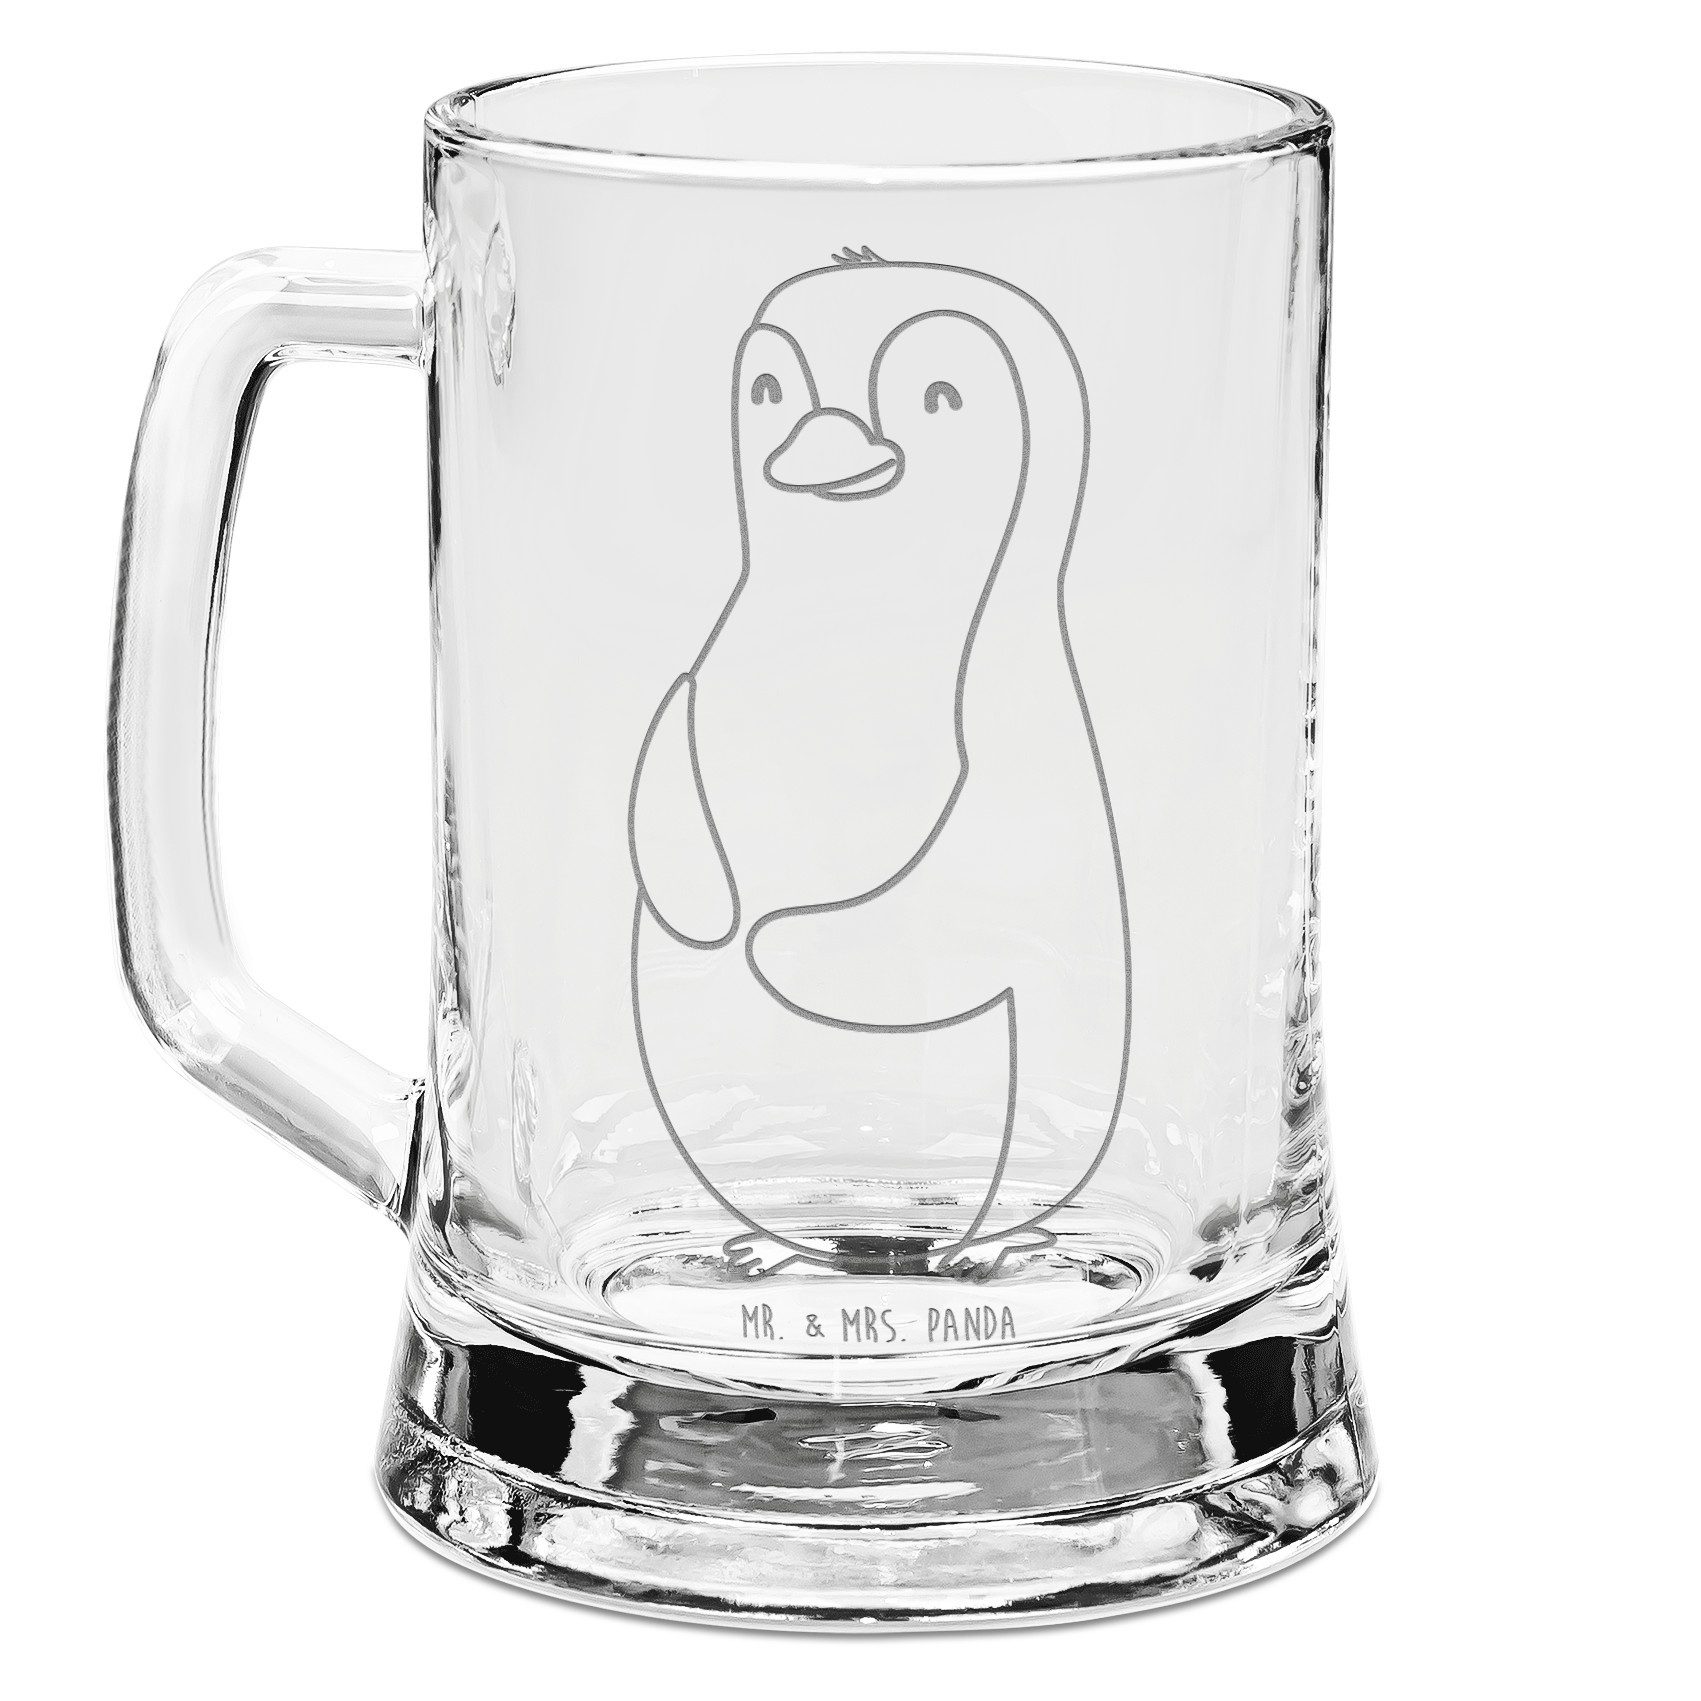 Mr. & Mrs. Panda Bierkrug Pinguin Diät - Transparent - Geschenk, Gewicht, Körperliebe, Bierkrug, Premium Glas, Lasergravur